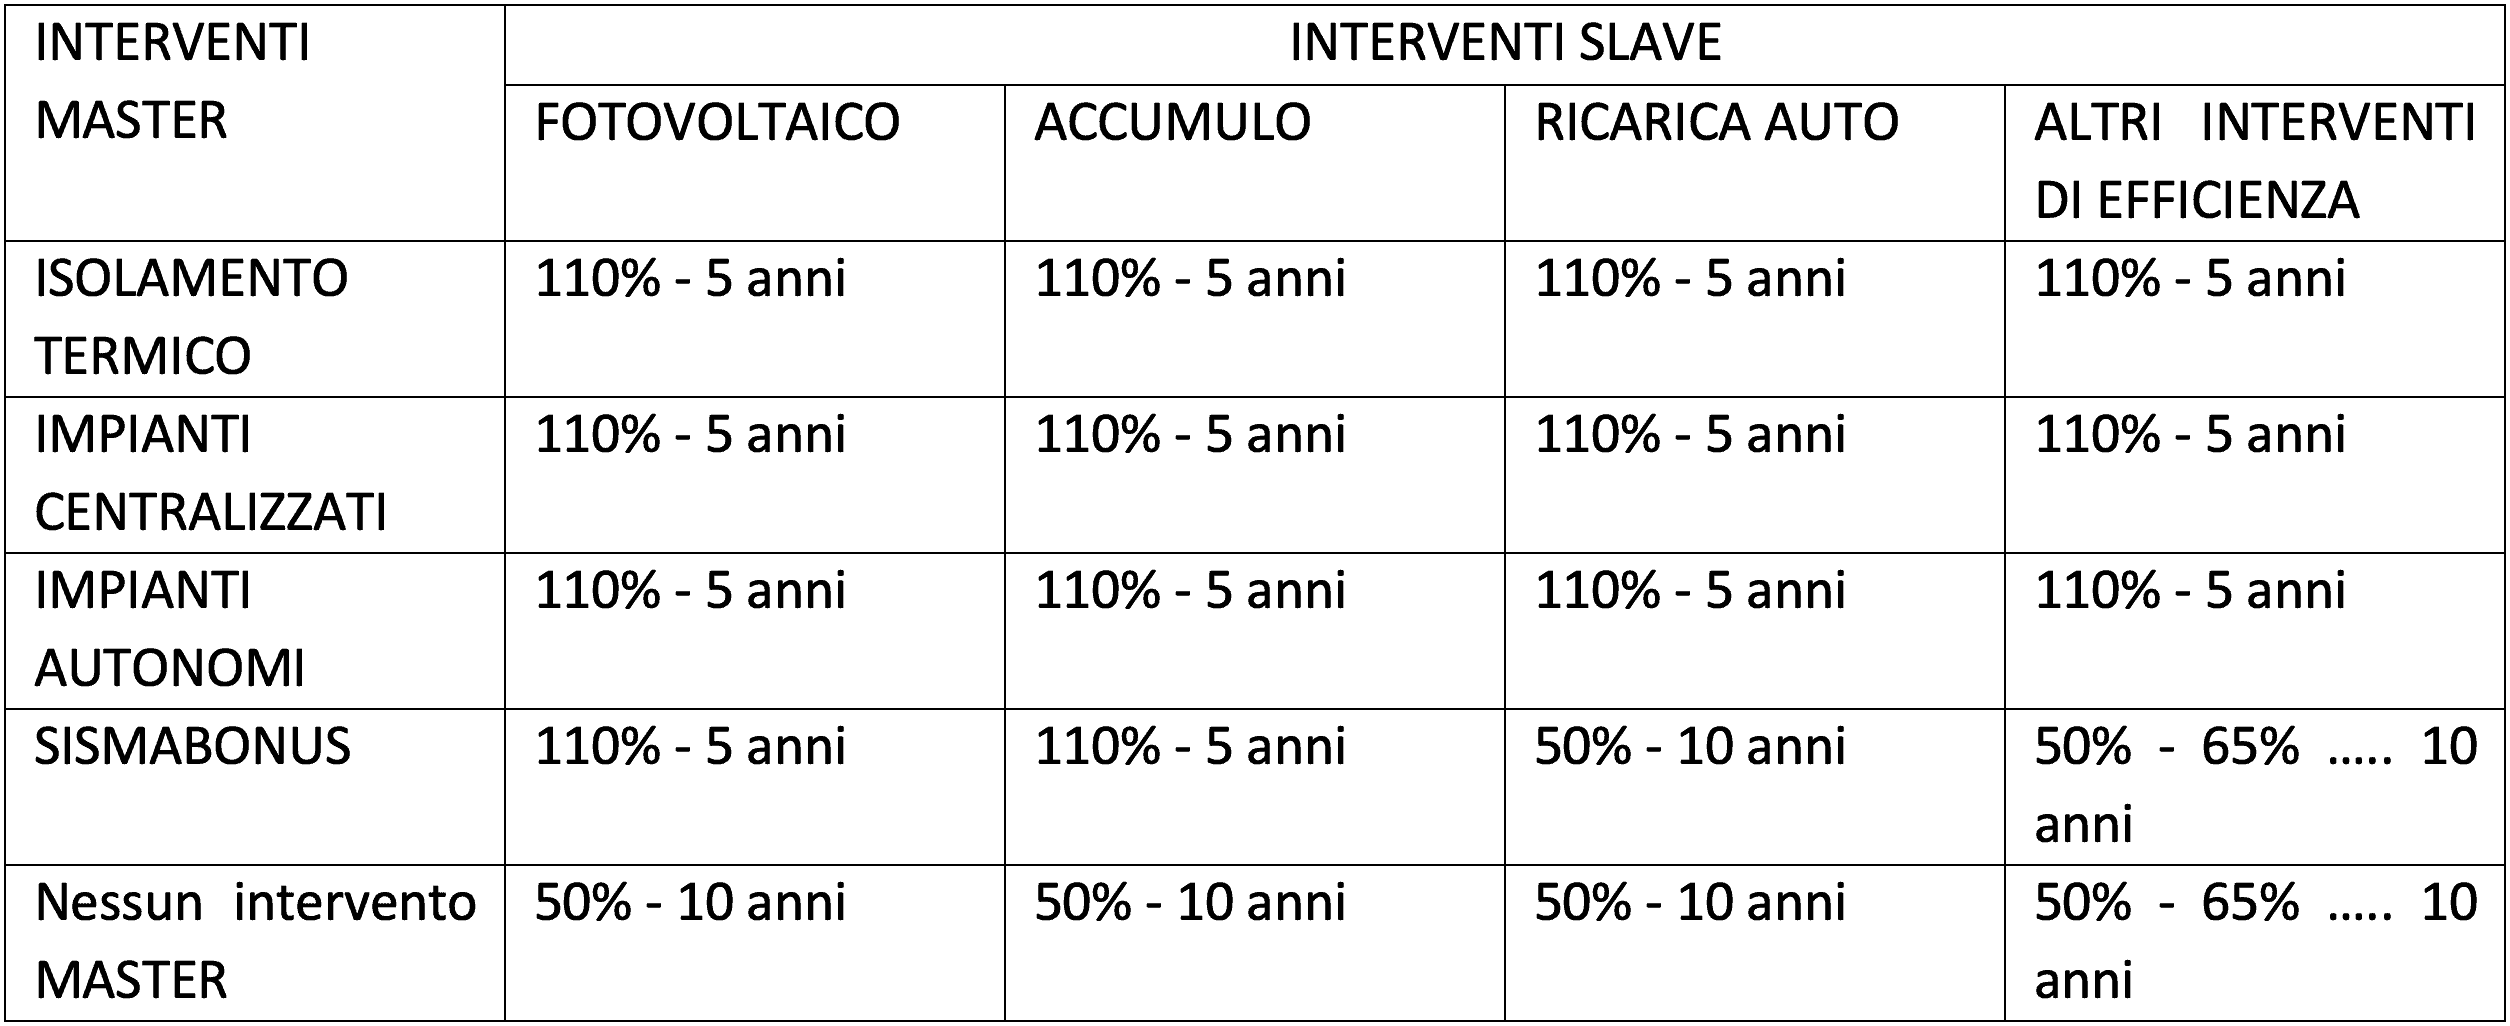 Gli interventi SLAVE vincolati alla realizzazione congiunta con interventi MASTER